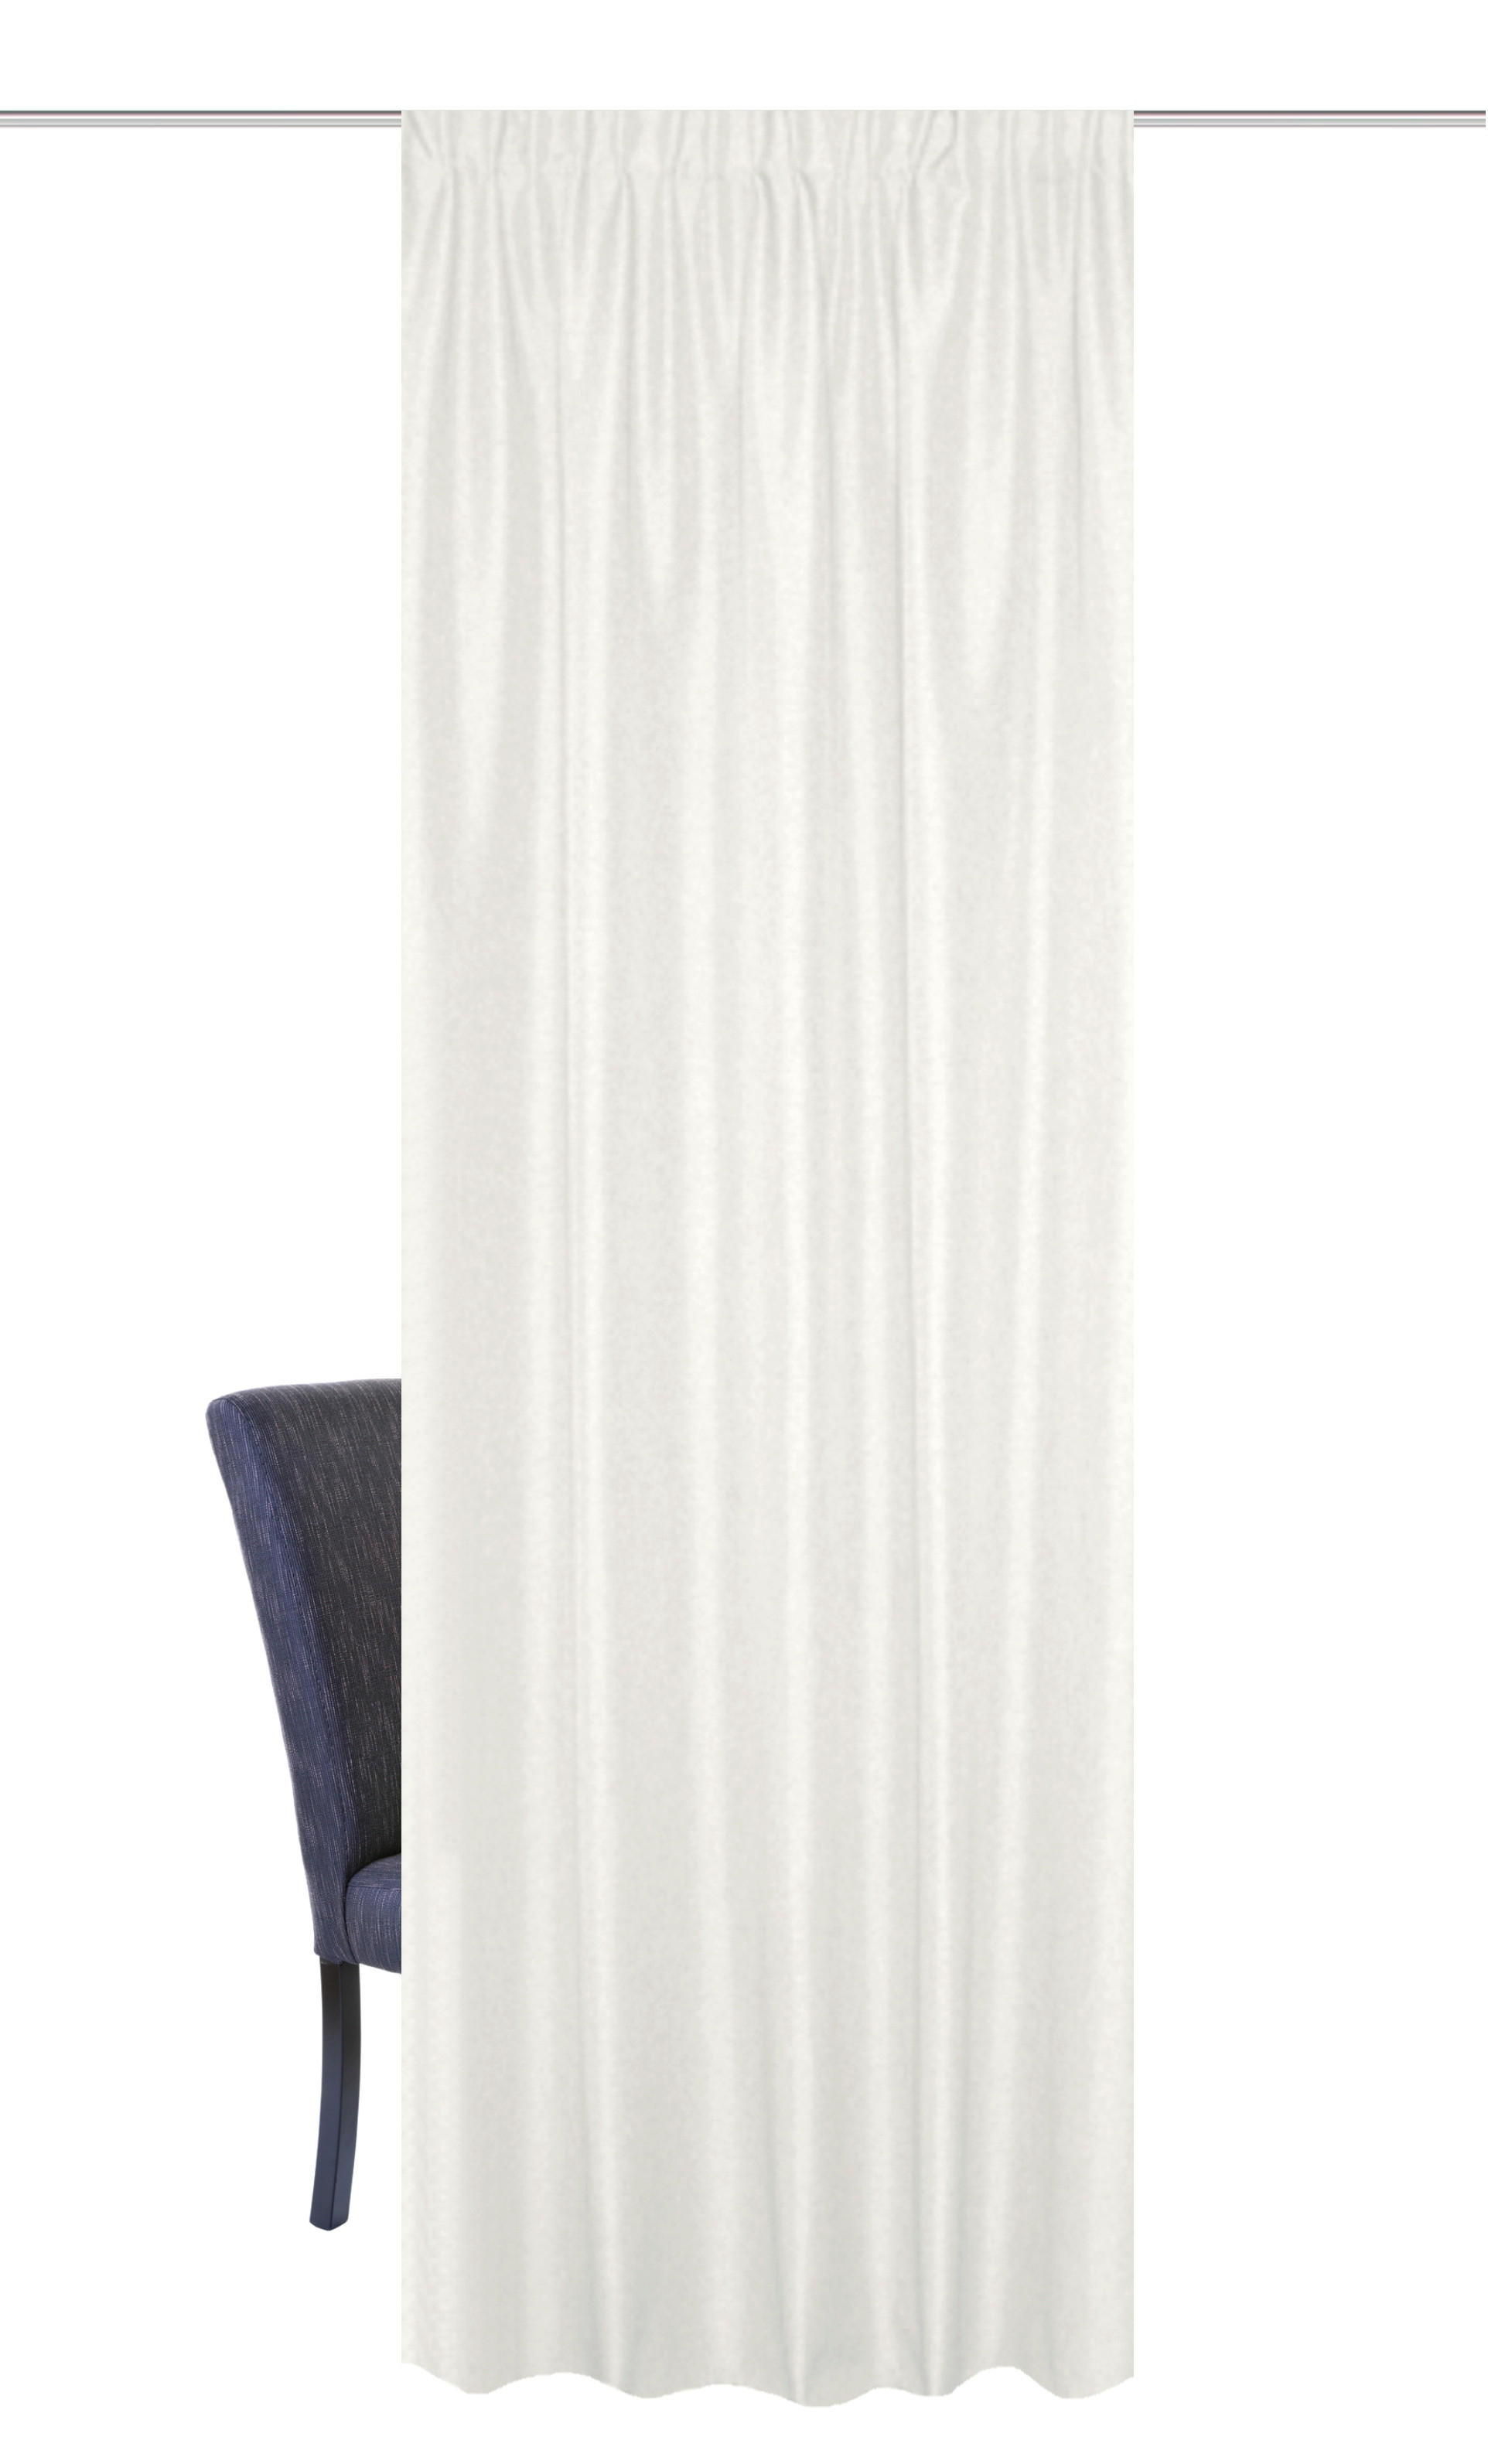 WÄRMESCHUTZVORHANG  blickdicht  135/145 cm   - Weiß, Basics, Textil (135/145cm)